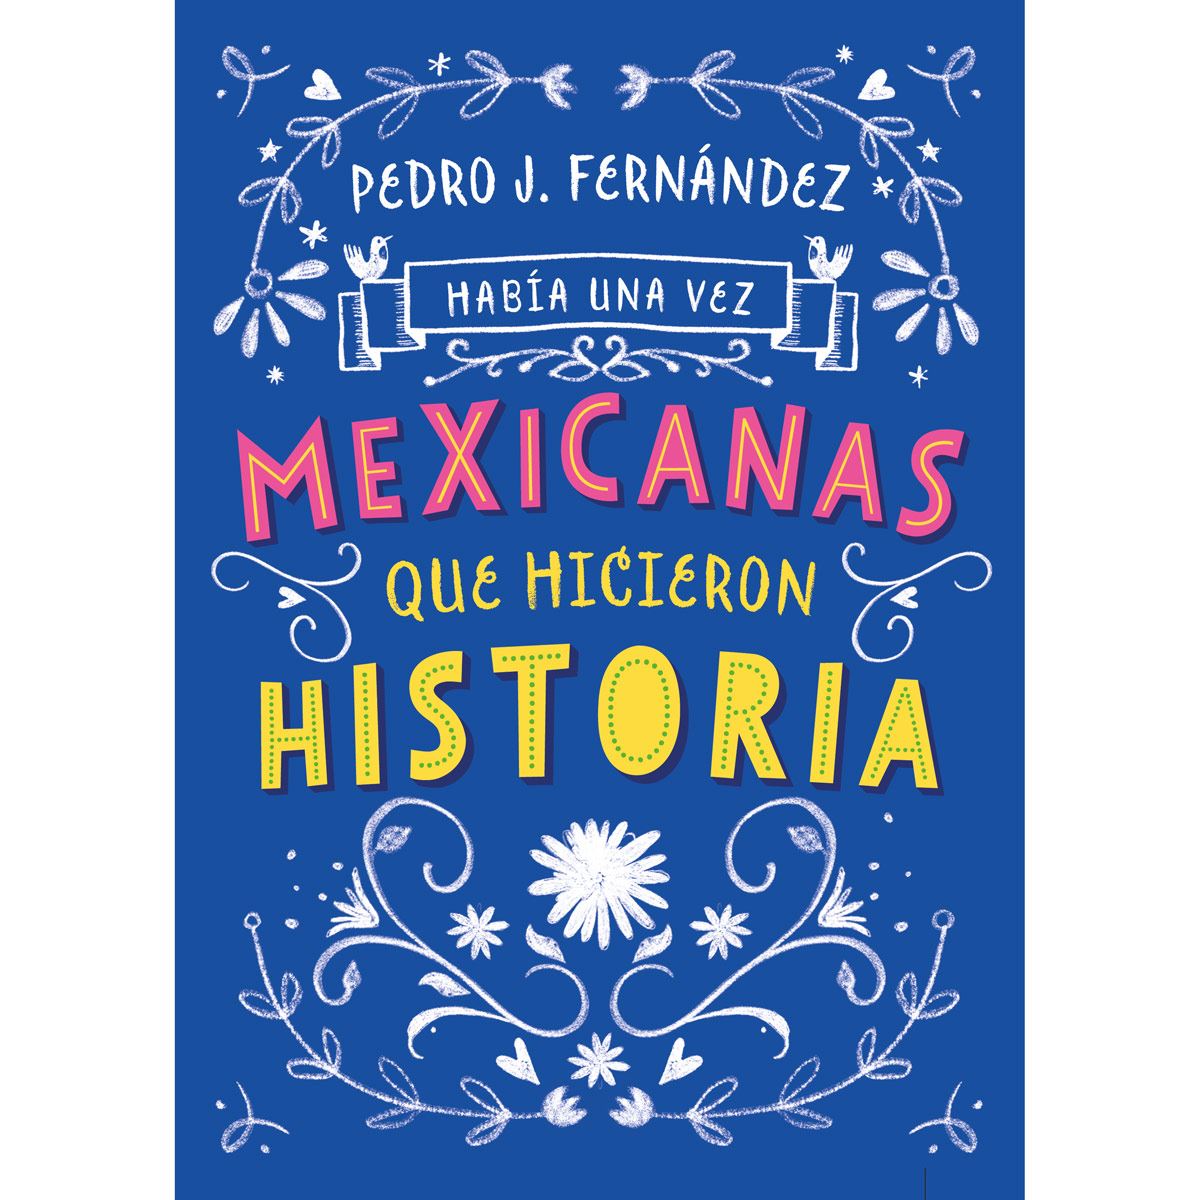 Había una vez mexicanas que hicieron historia Autor : Pedro J. Fernandez